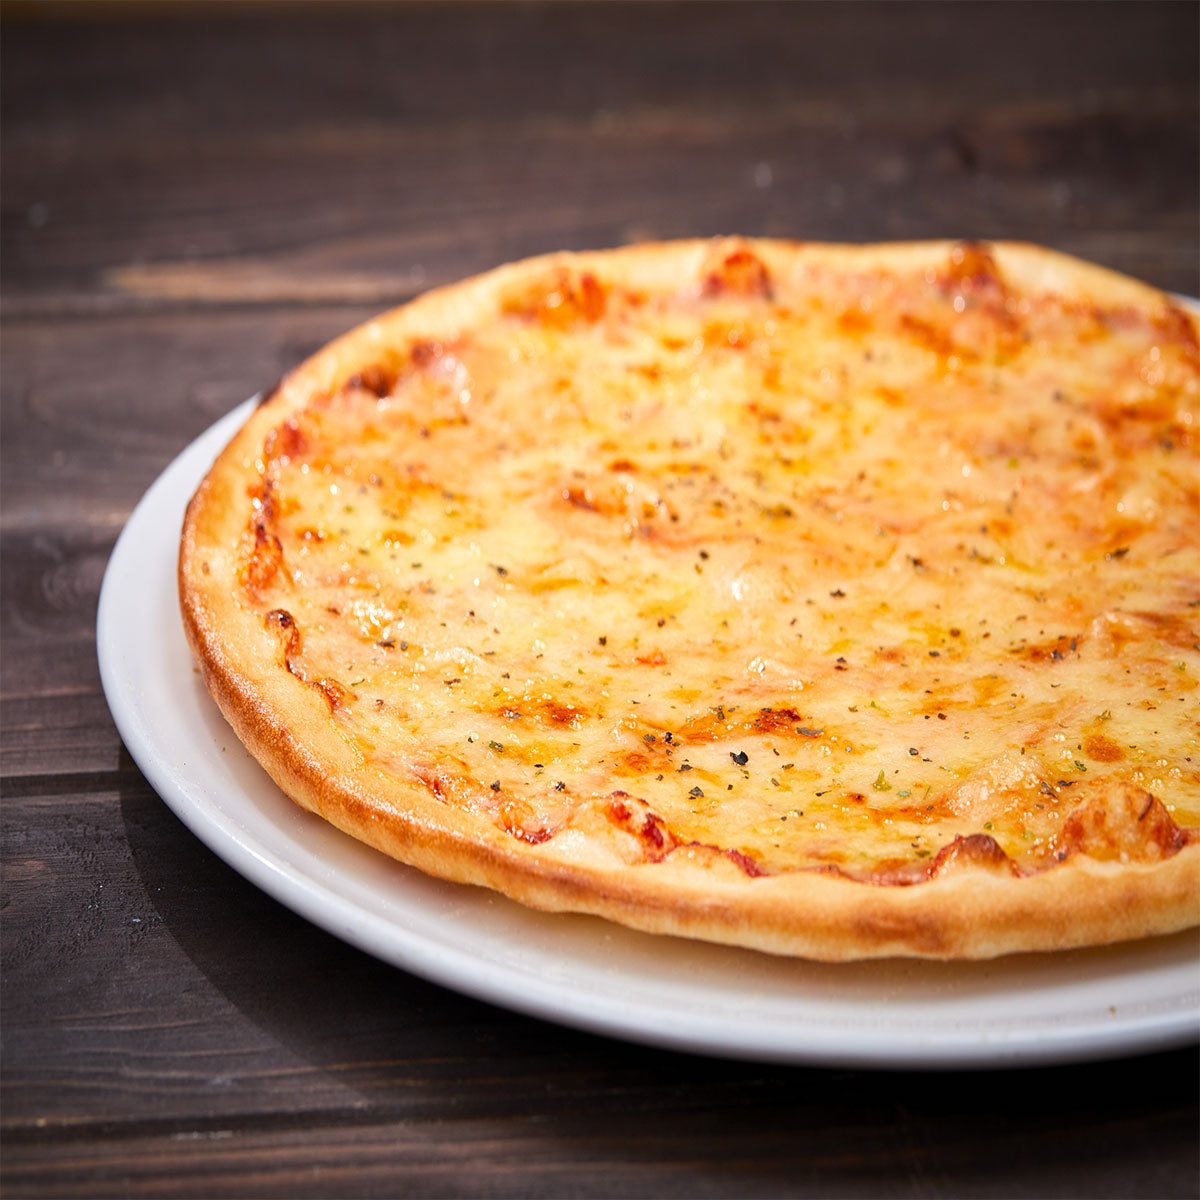 (12 stk.) PERA White - Flad tallerken - Pizza tallerken - Ø 30 cm